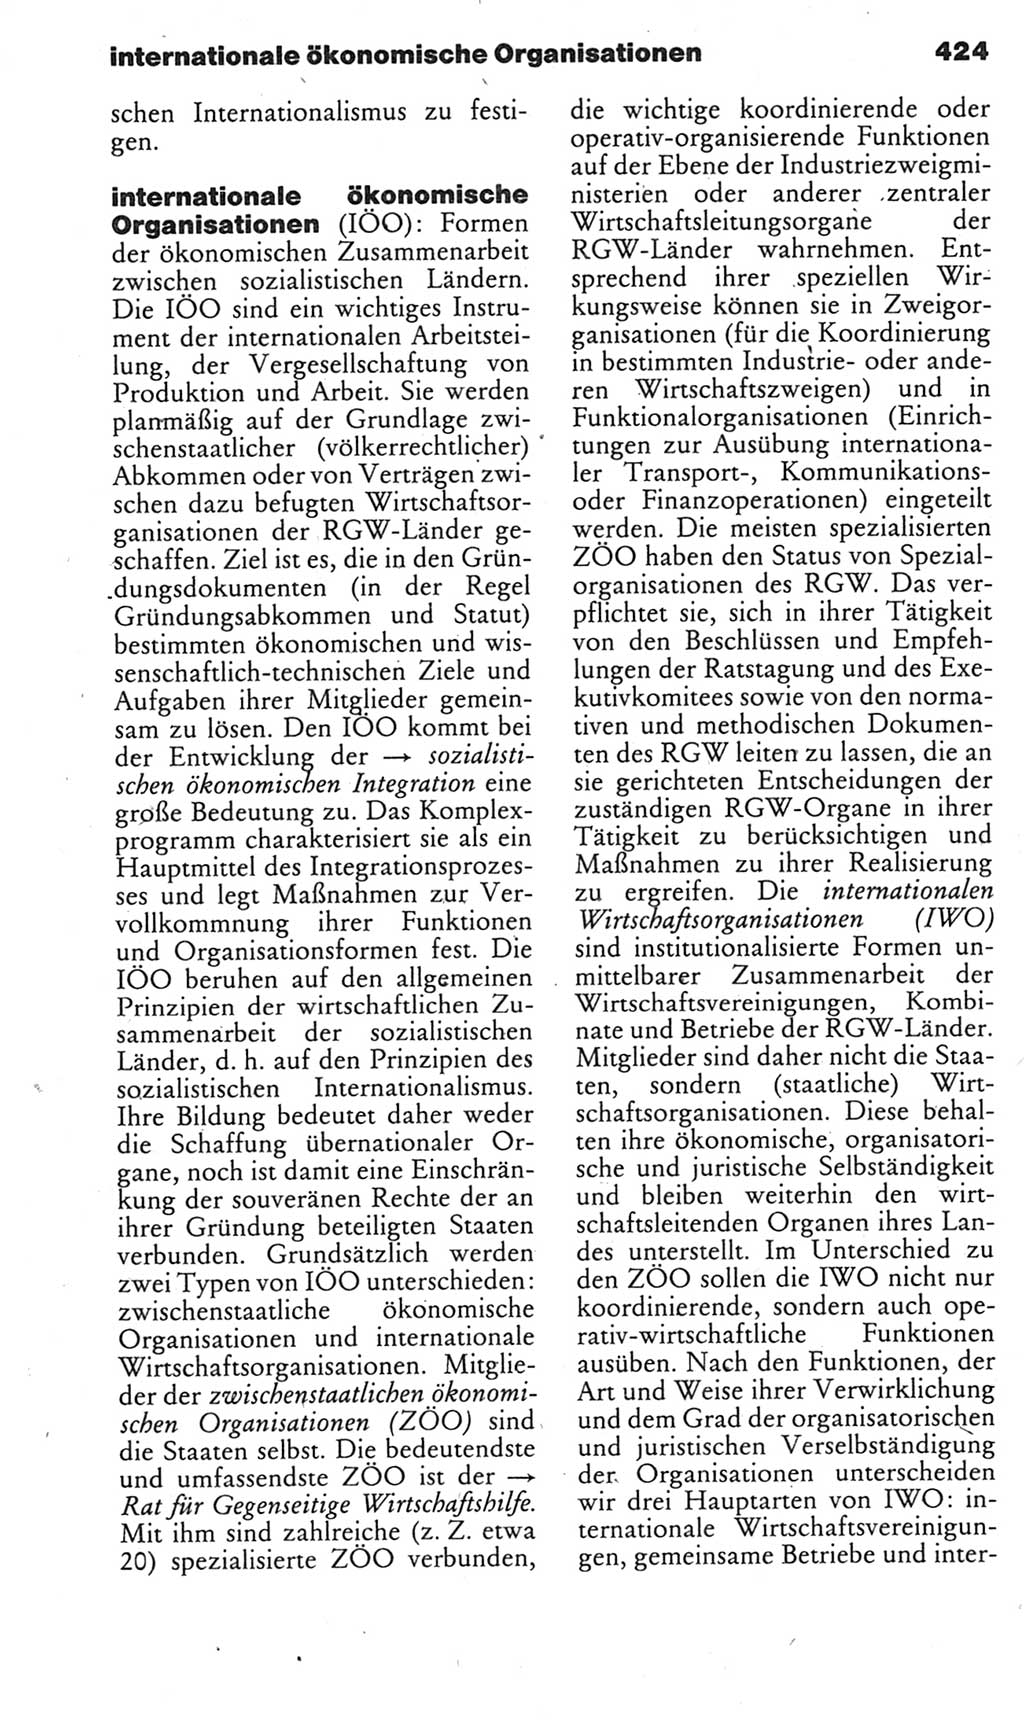 Kleines politisches Wörterbuch [Deutsche Demokratische Republik (DDR)] 1985, Seite 424 (Kl. pol. Wb. DDR 1985, S. 424)